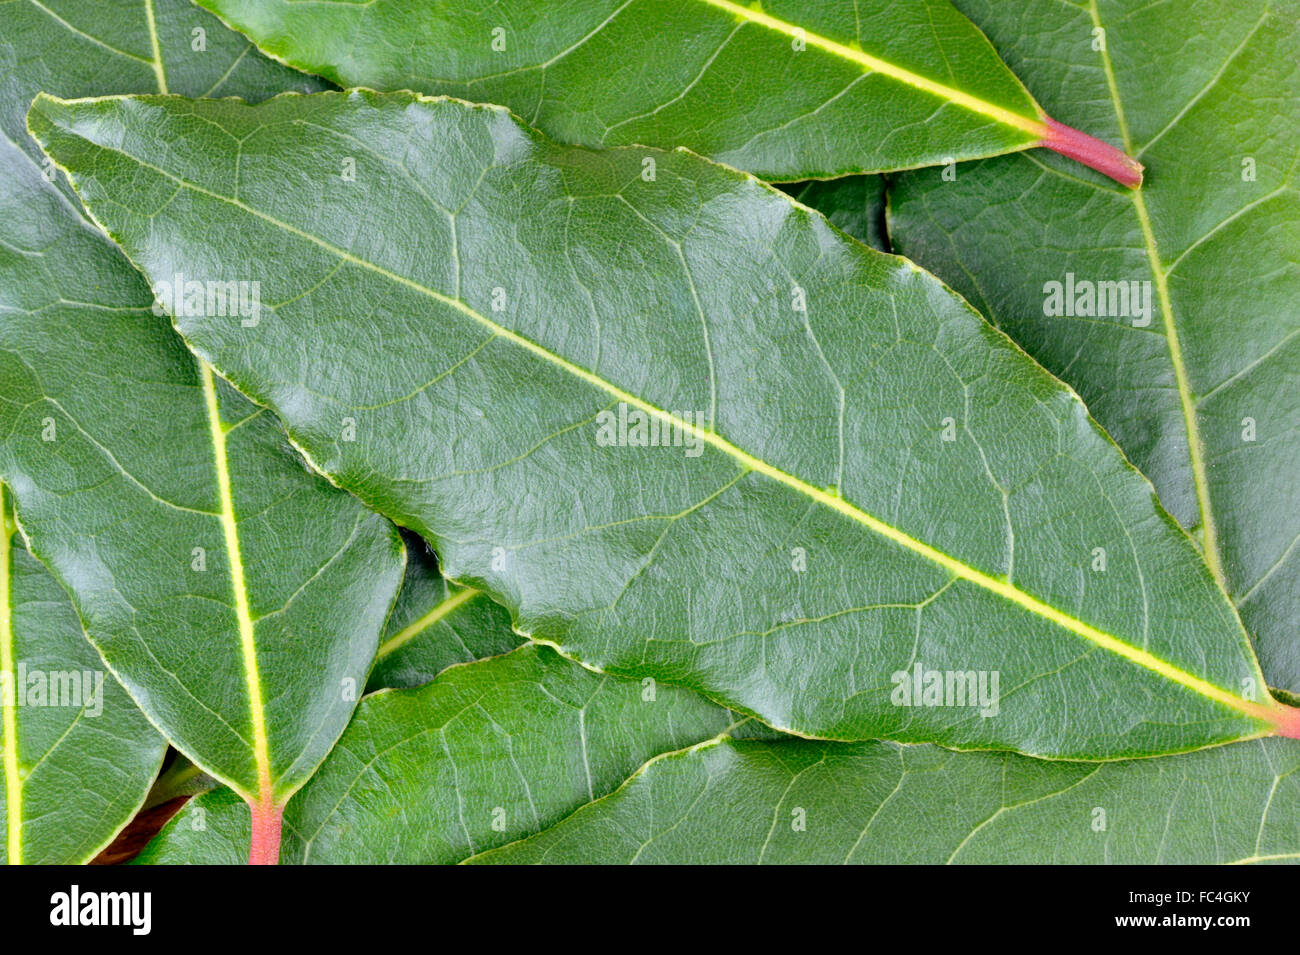 Frisch gepflückt Lorbeer, Laurus Nobilis oder Lorbeer Baum, zur Verwendung als Zutat in der Küche. Stockfoto